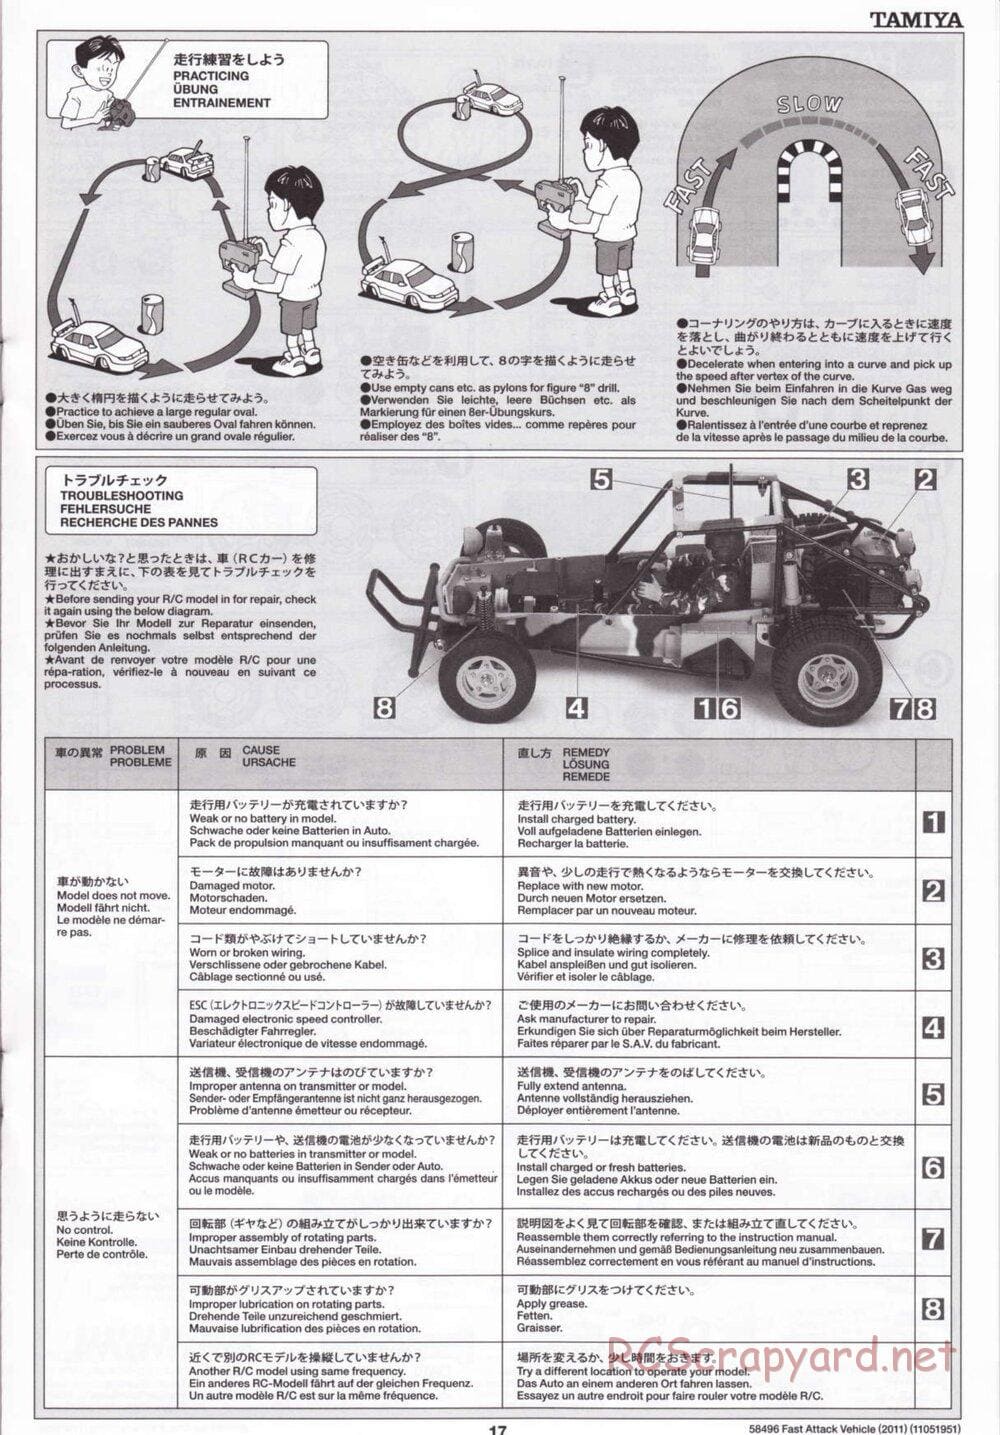 Tamiya - Fast Attack Vehicle 2011 - FAV Chassis - Manual - Page 17